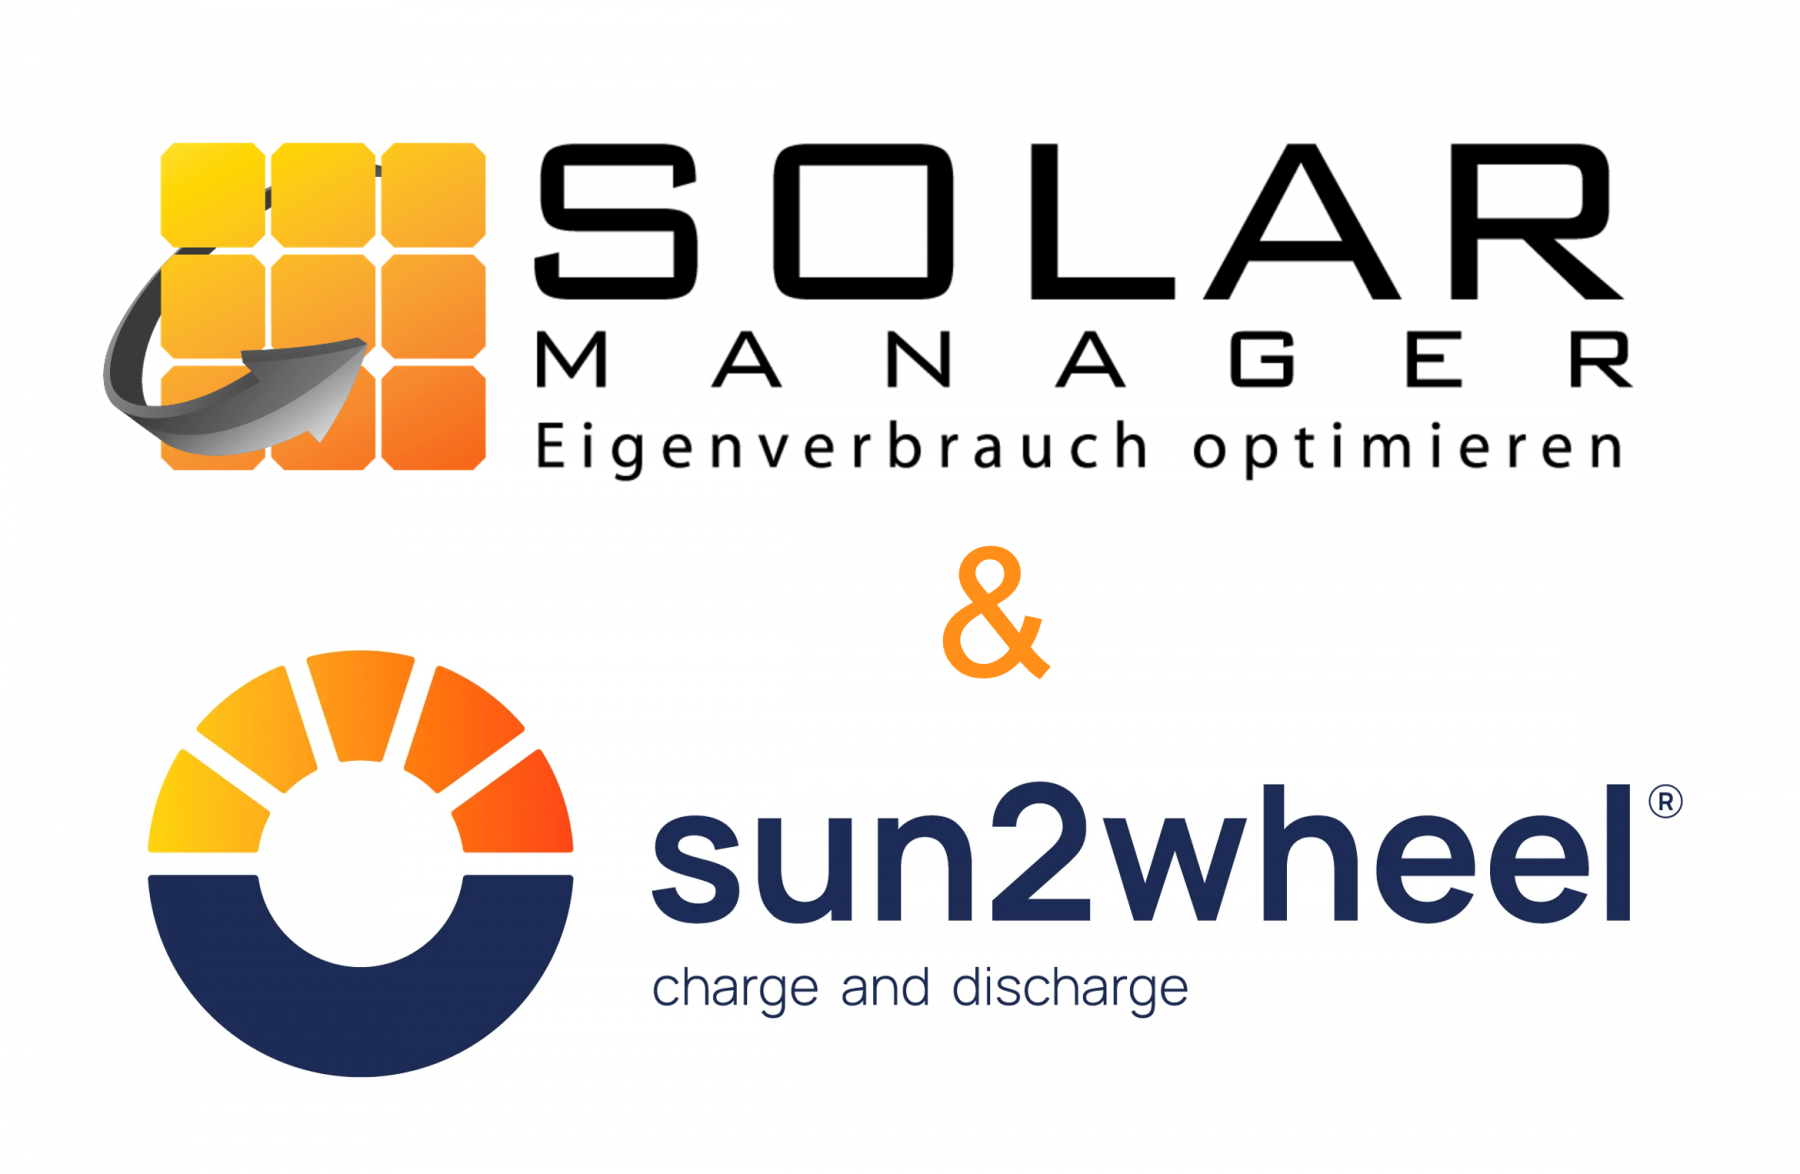 sun2wheel | Neue Partnerschaft mit Solar Manager